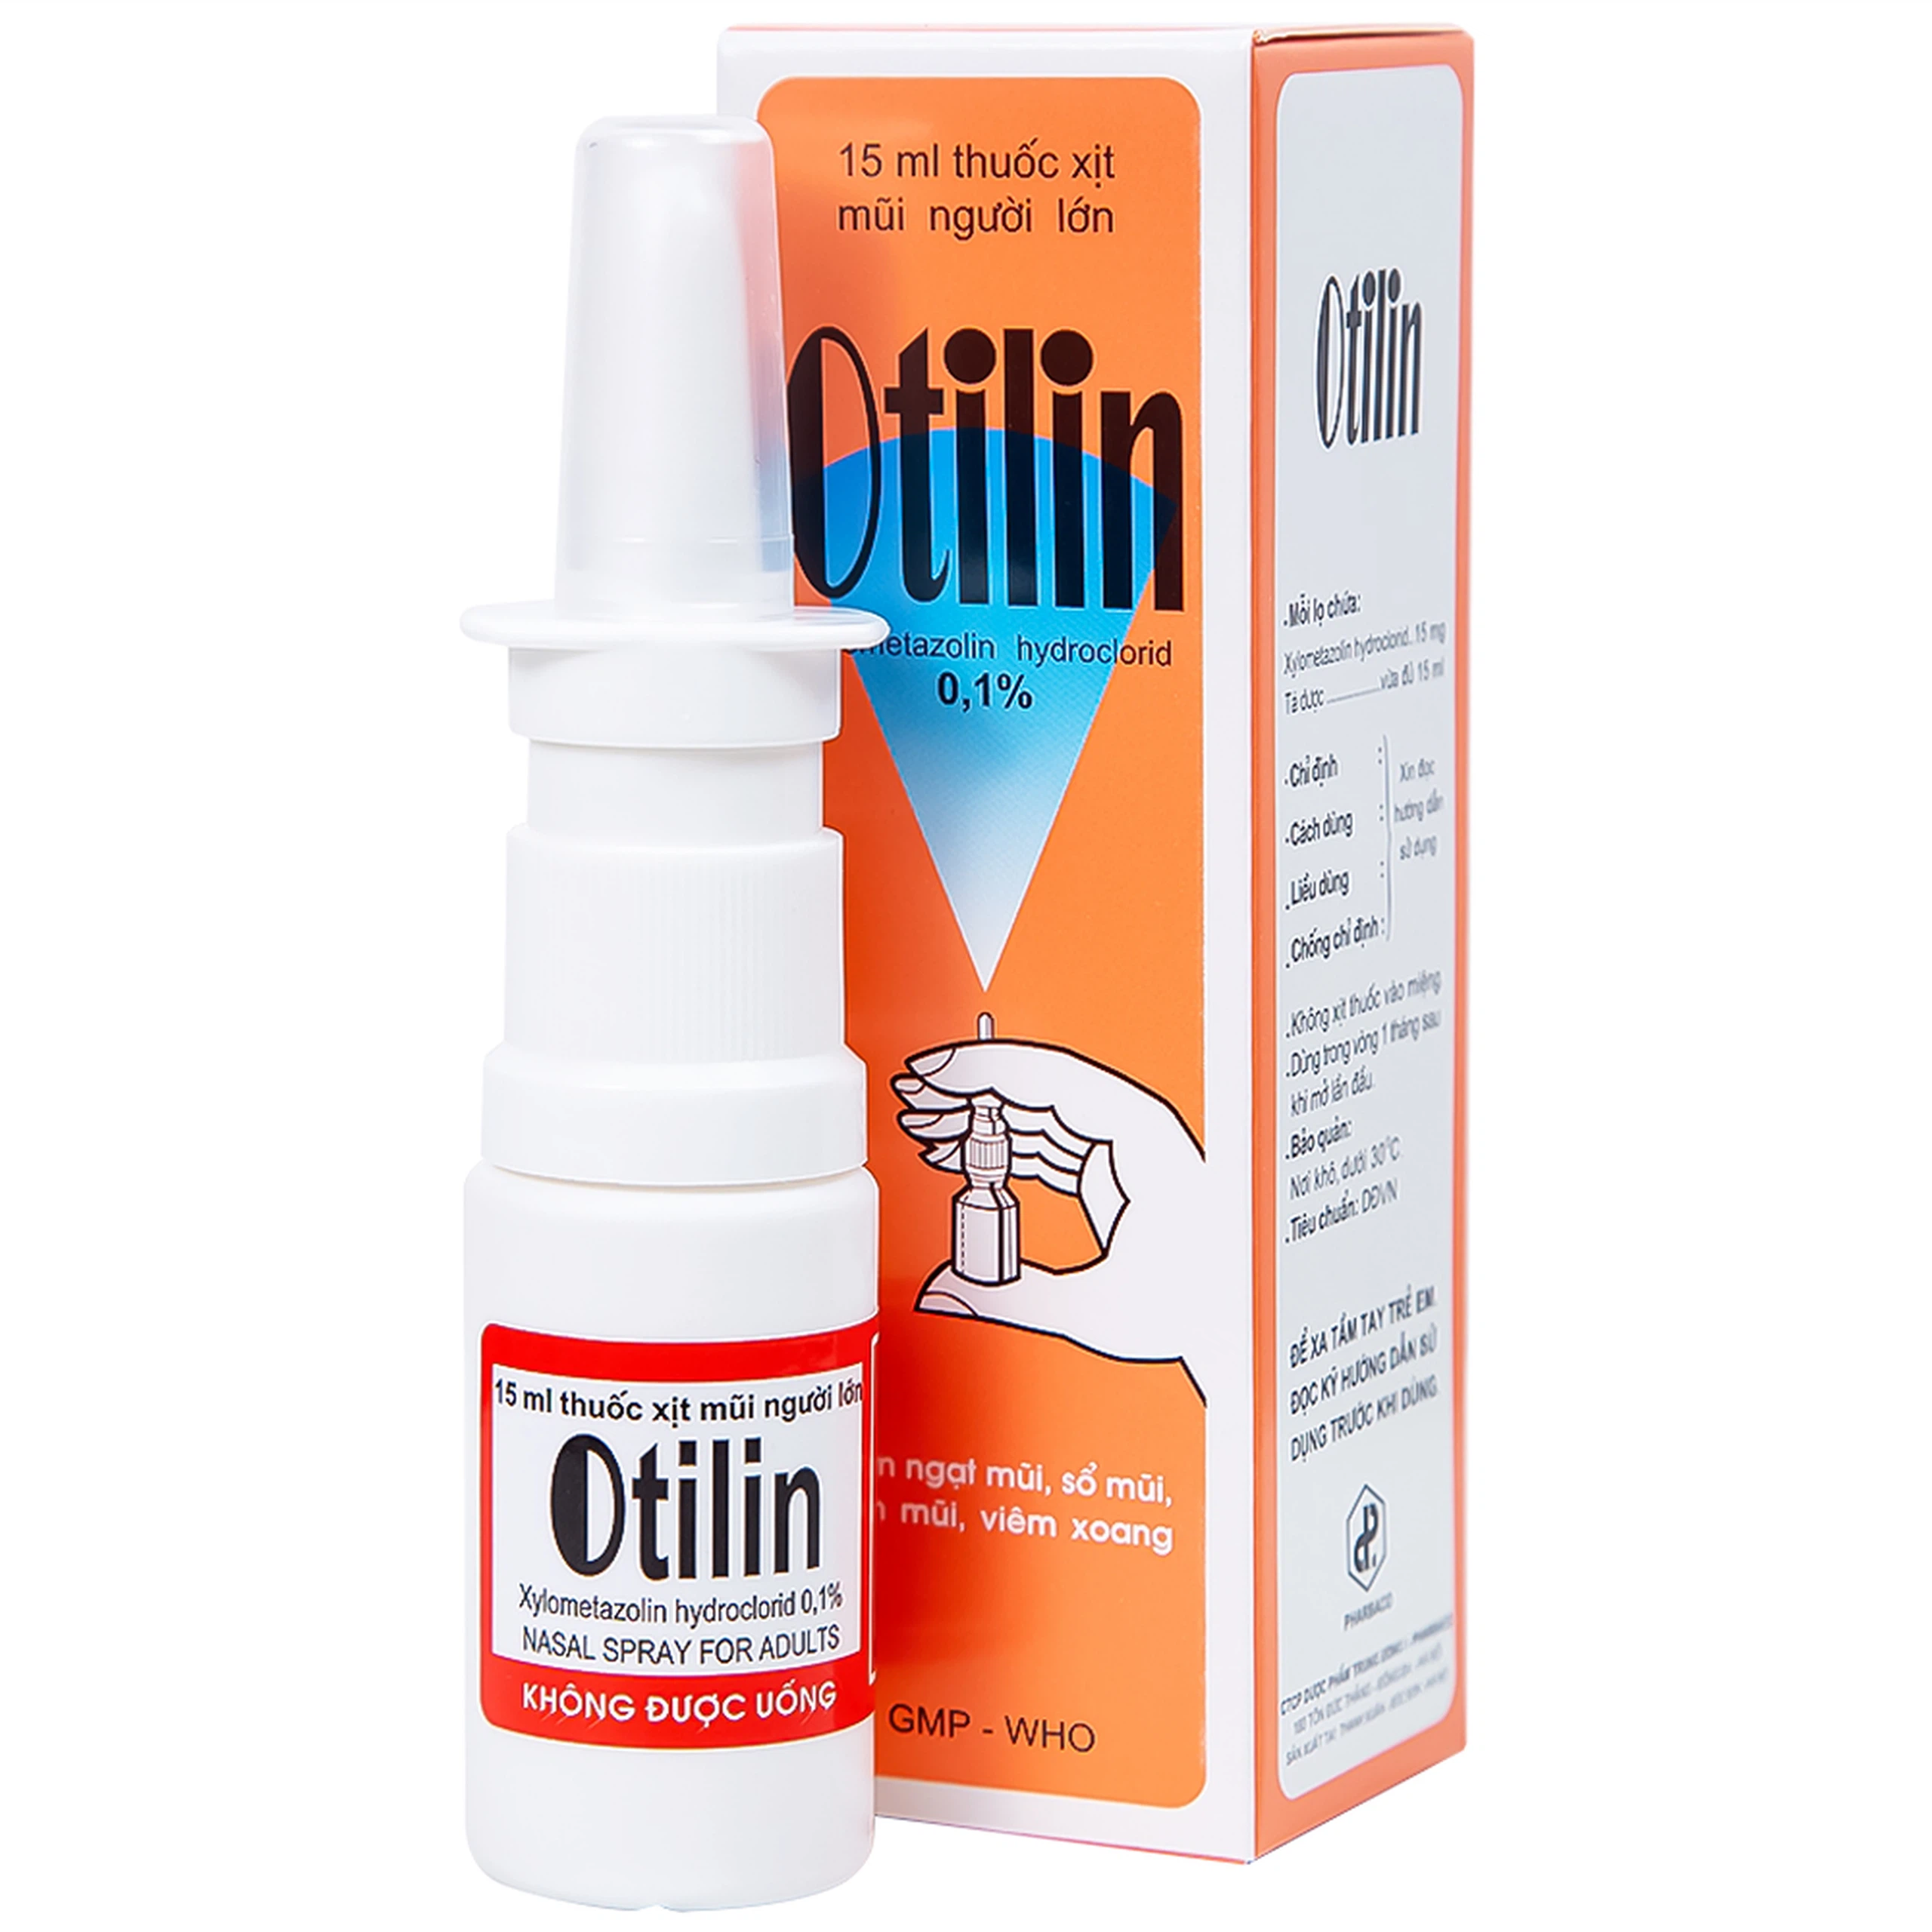 Thuốc xịt mũi Otilin 0.1% Pharbaco giảm ngạt mũi, sung huyết trong viêm mũi (15ml)